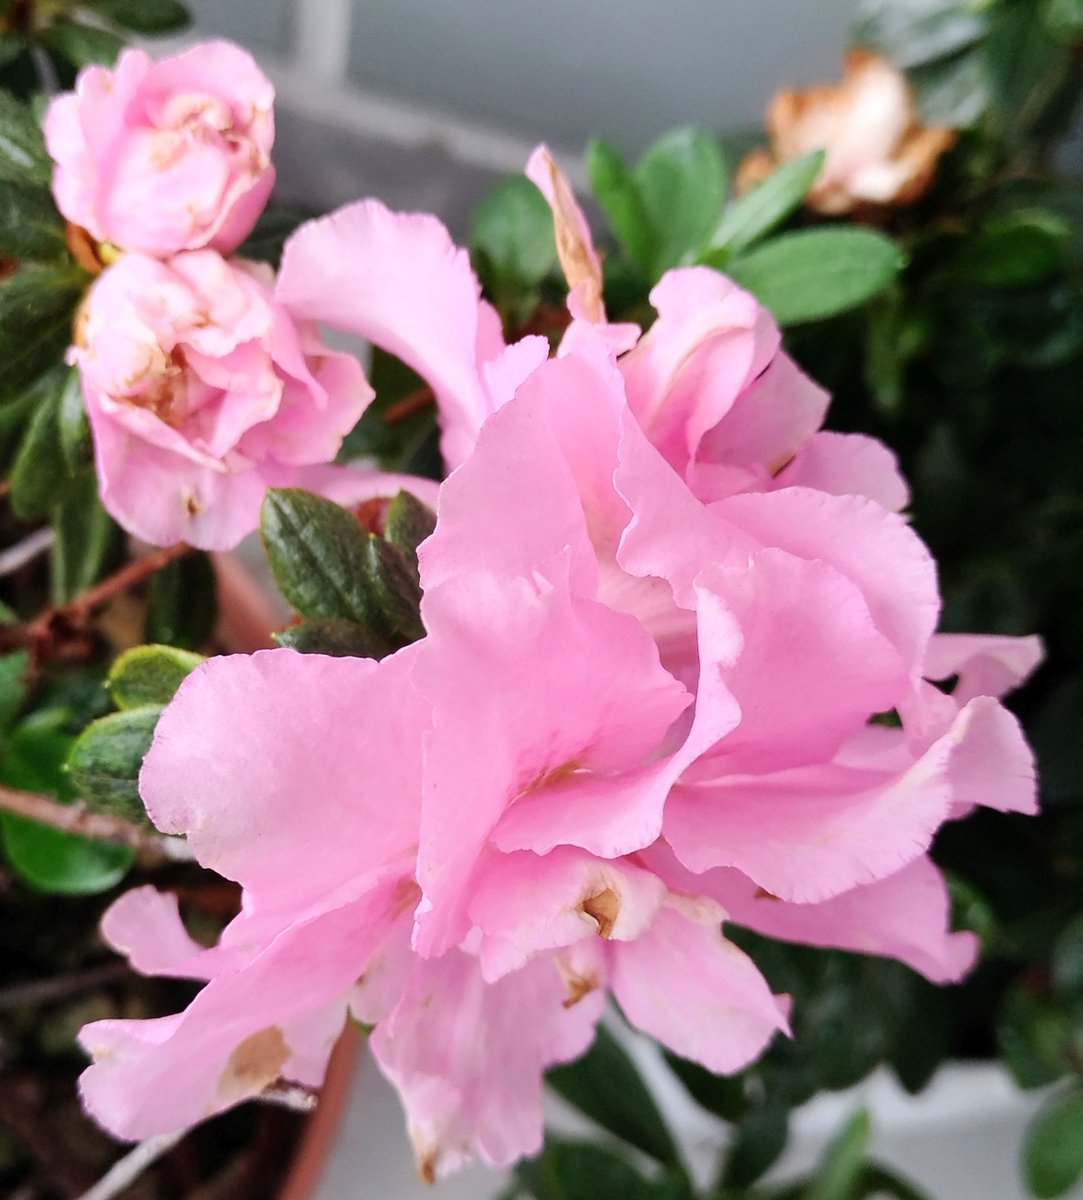 こころんグリーン Sur Twitter アザレアのピンクの花が開きました 八重咲の大柄の花が咲いています 淡いピンク色がとても綺麗です アザレア 八重咲 大柄の花 ピンク ツツジ科 園芸品種 初夏の花 初夏 園芸 ガーデニング 熊本市南区 熊本 T